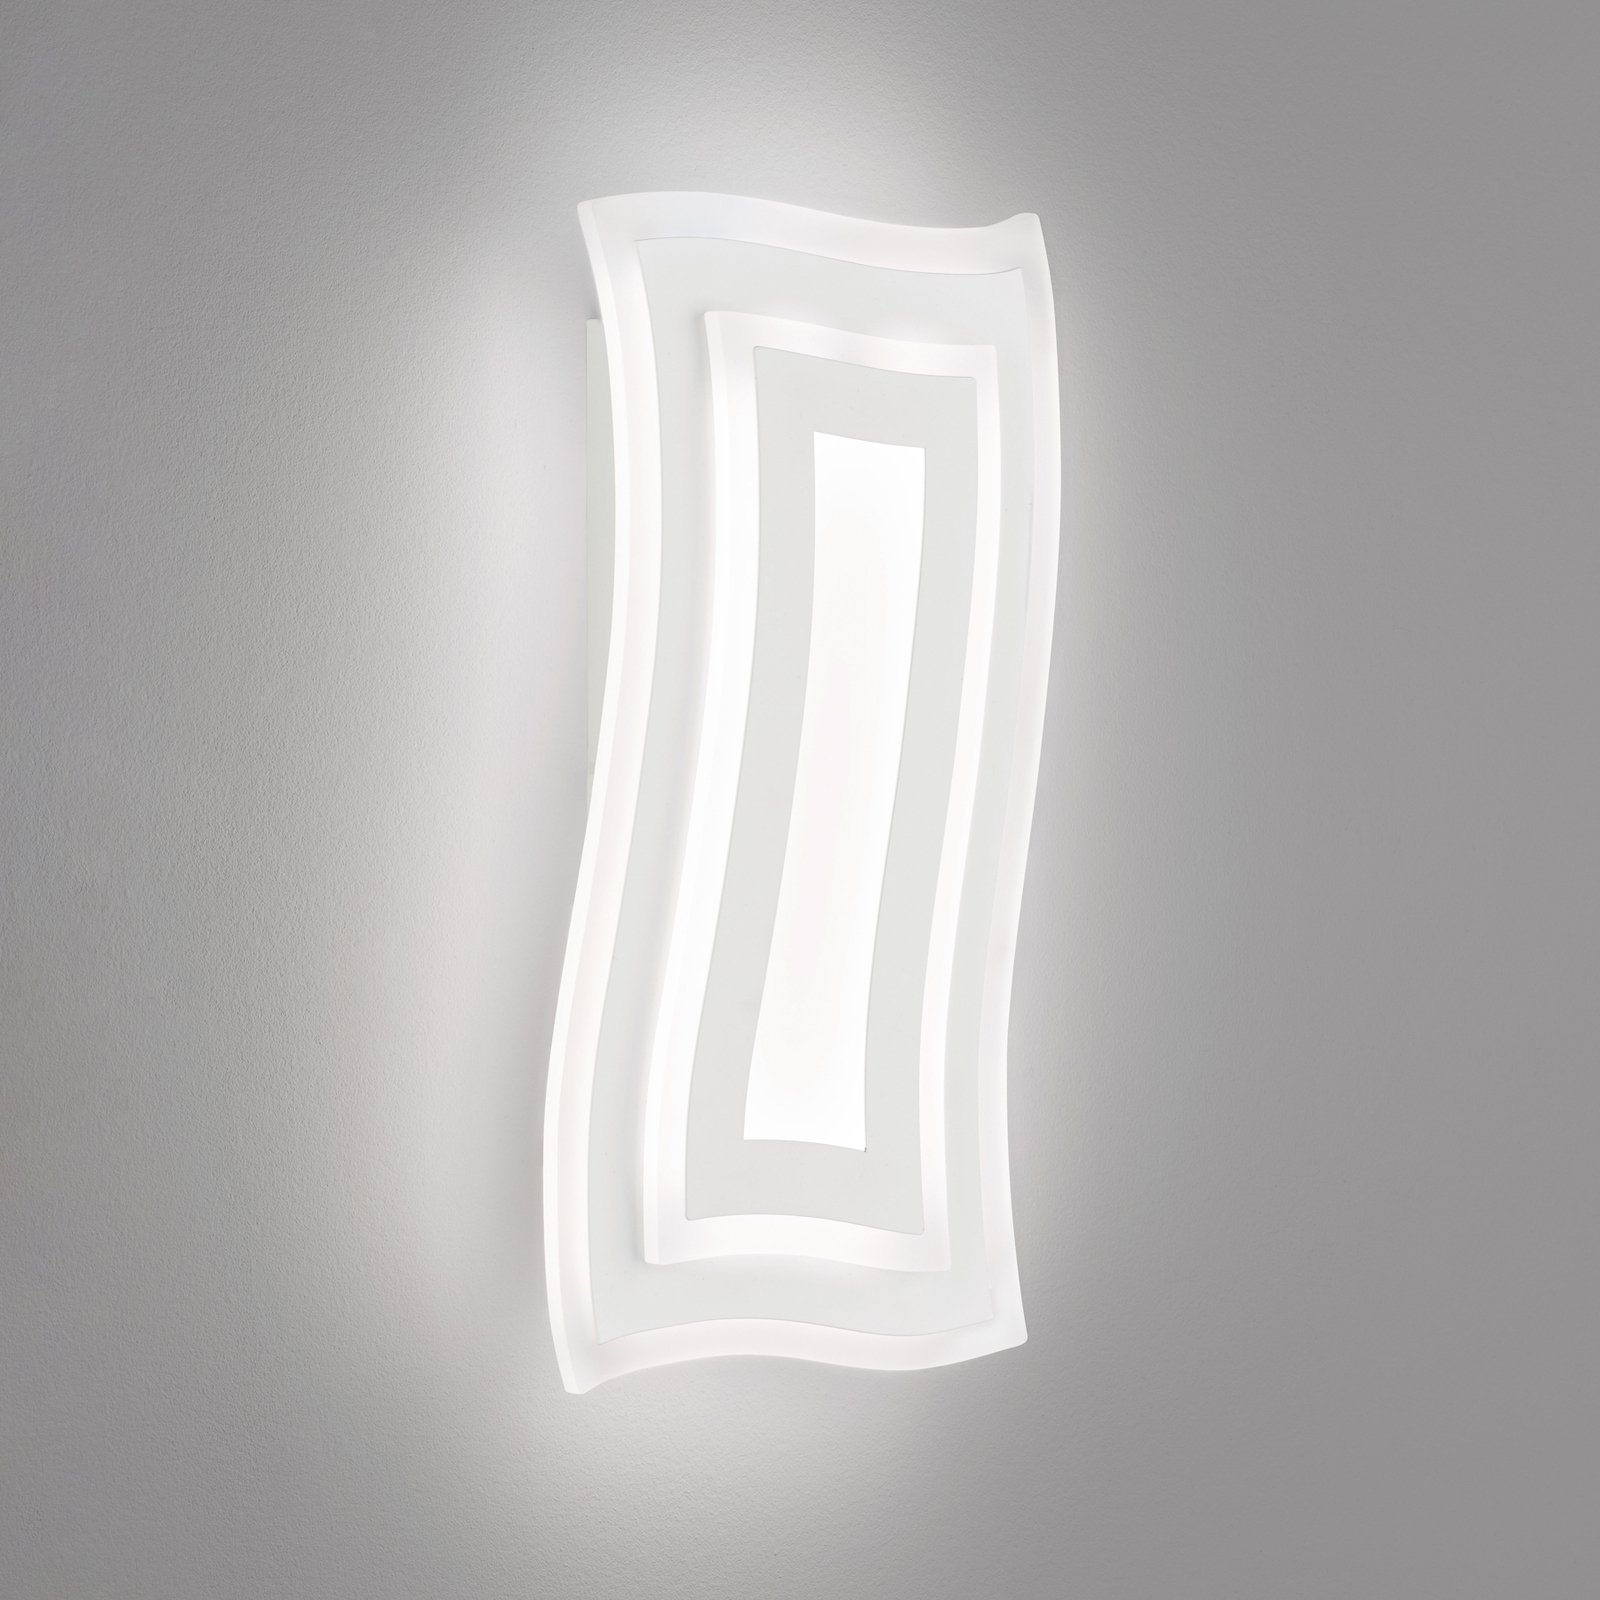 Gorden LED wall light, white, height 43 cm, metal, CCT